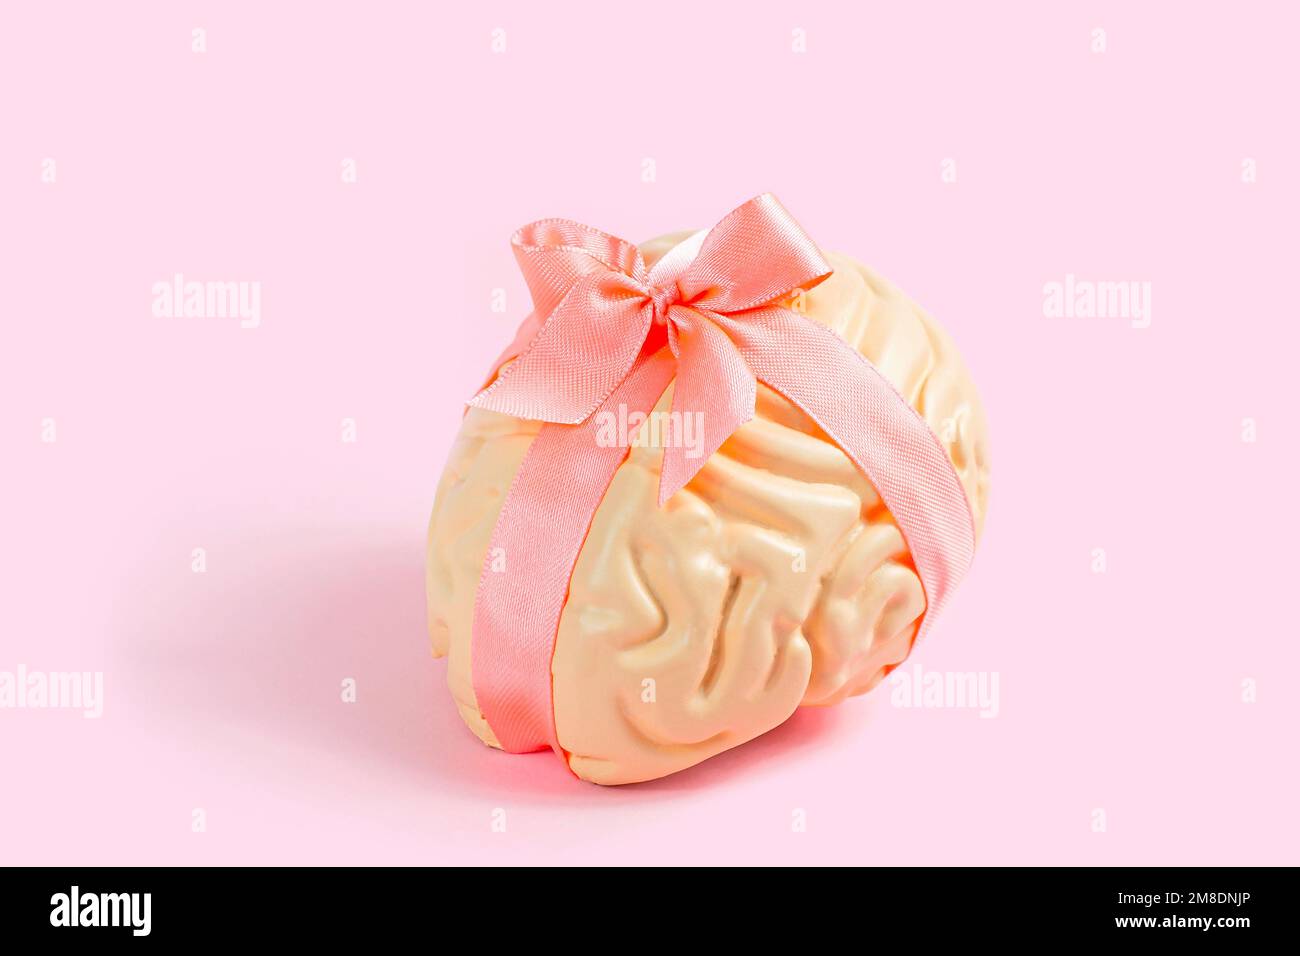 Modello a cervello umano rosa brillante con arco in raso su sfondo pastello. Creatività, ispirazione e concetto di salute mentale. Foto Stock